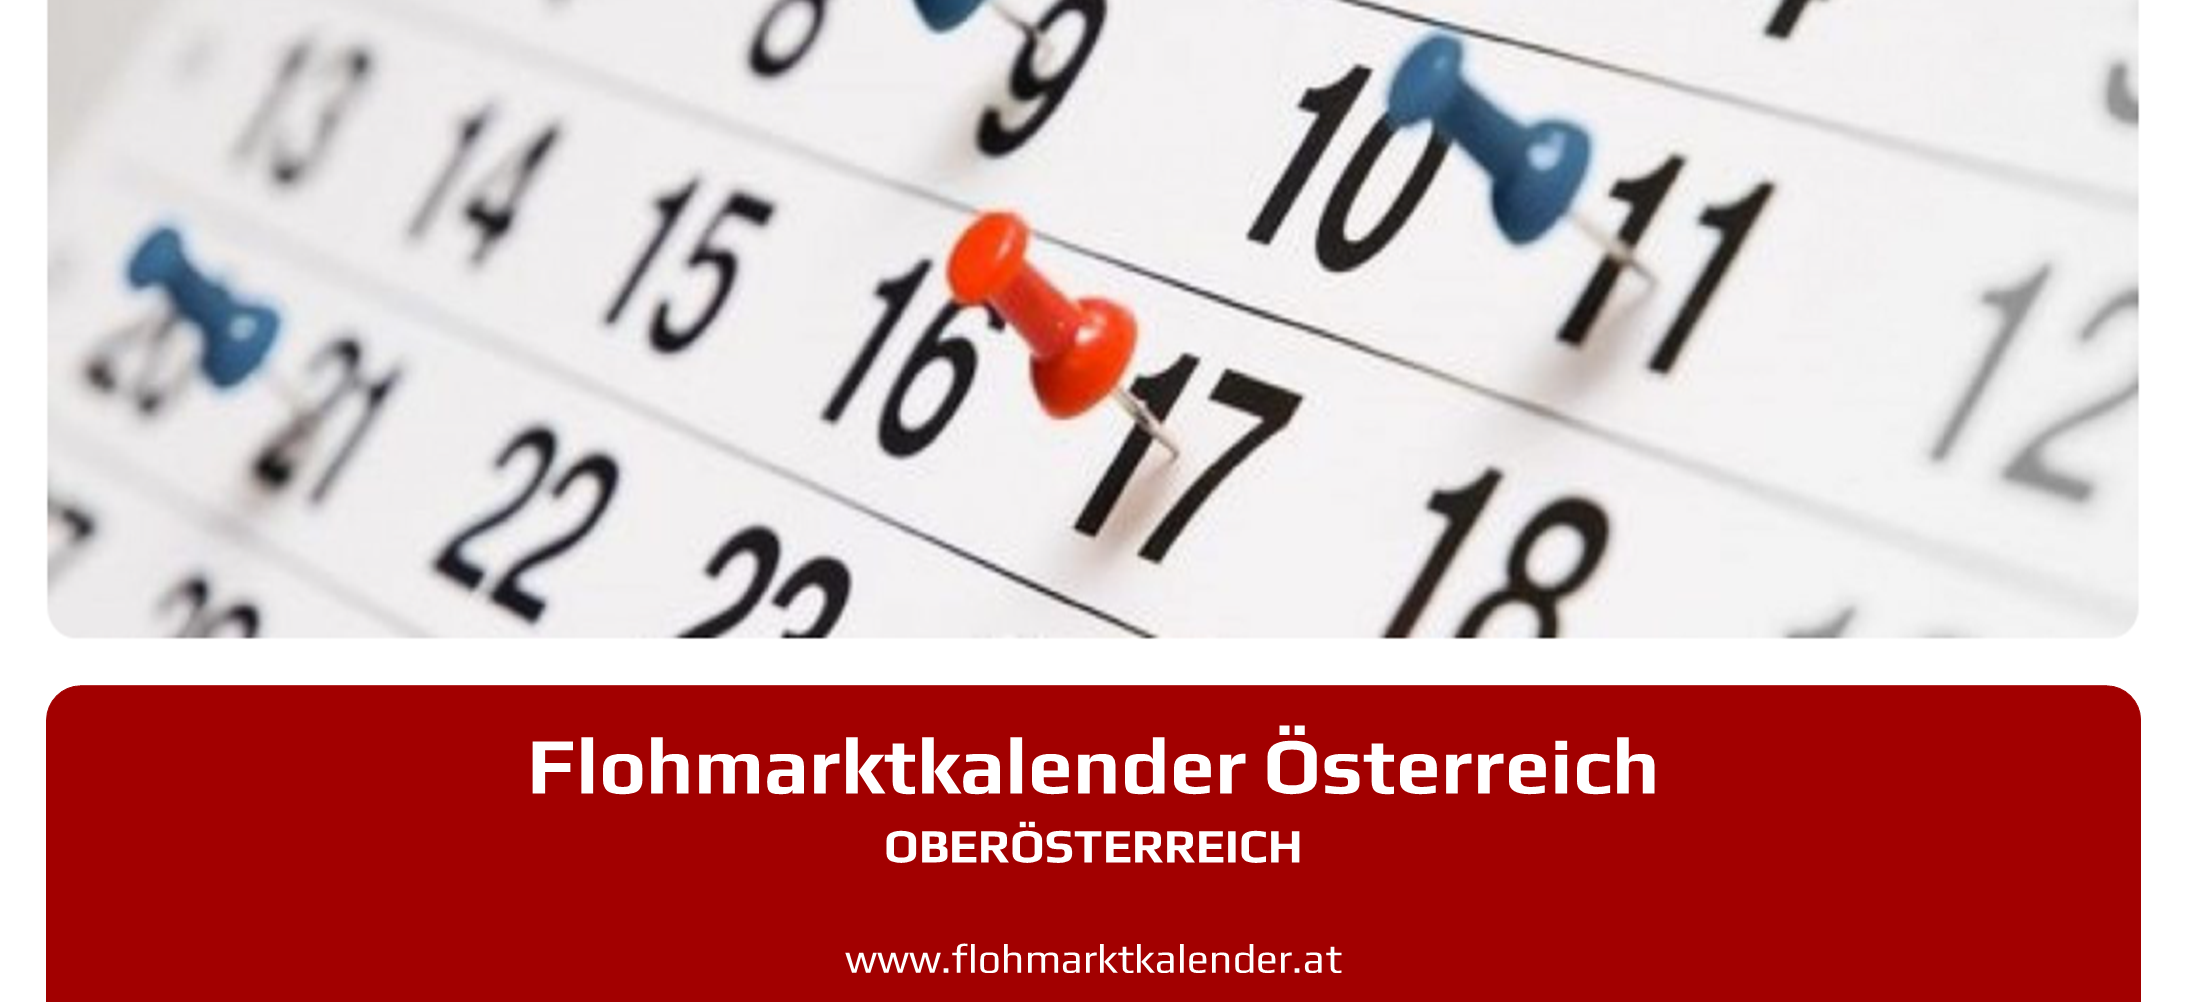 Flohmarktkalender Oberoesterreich 2